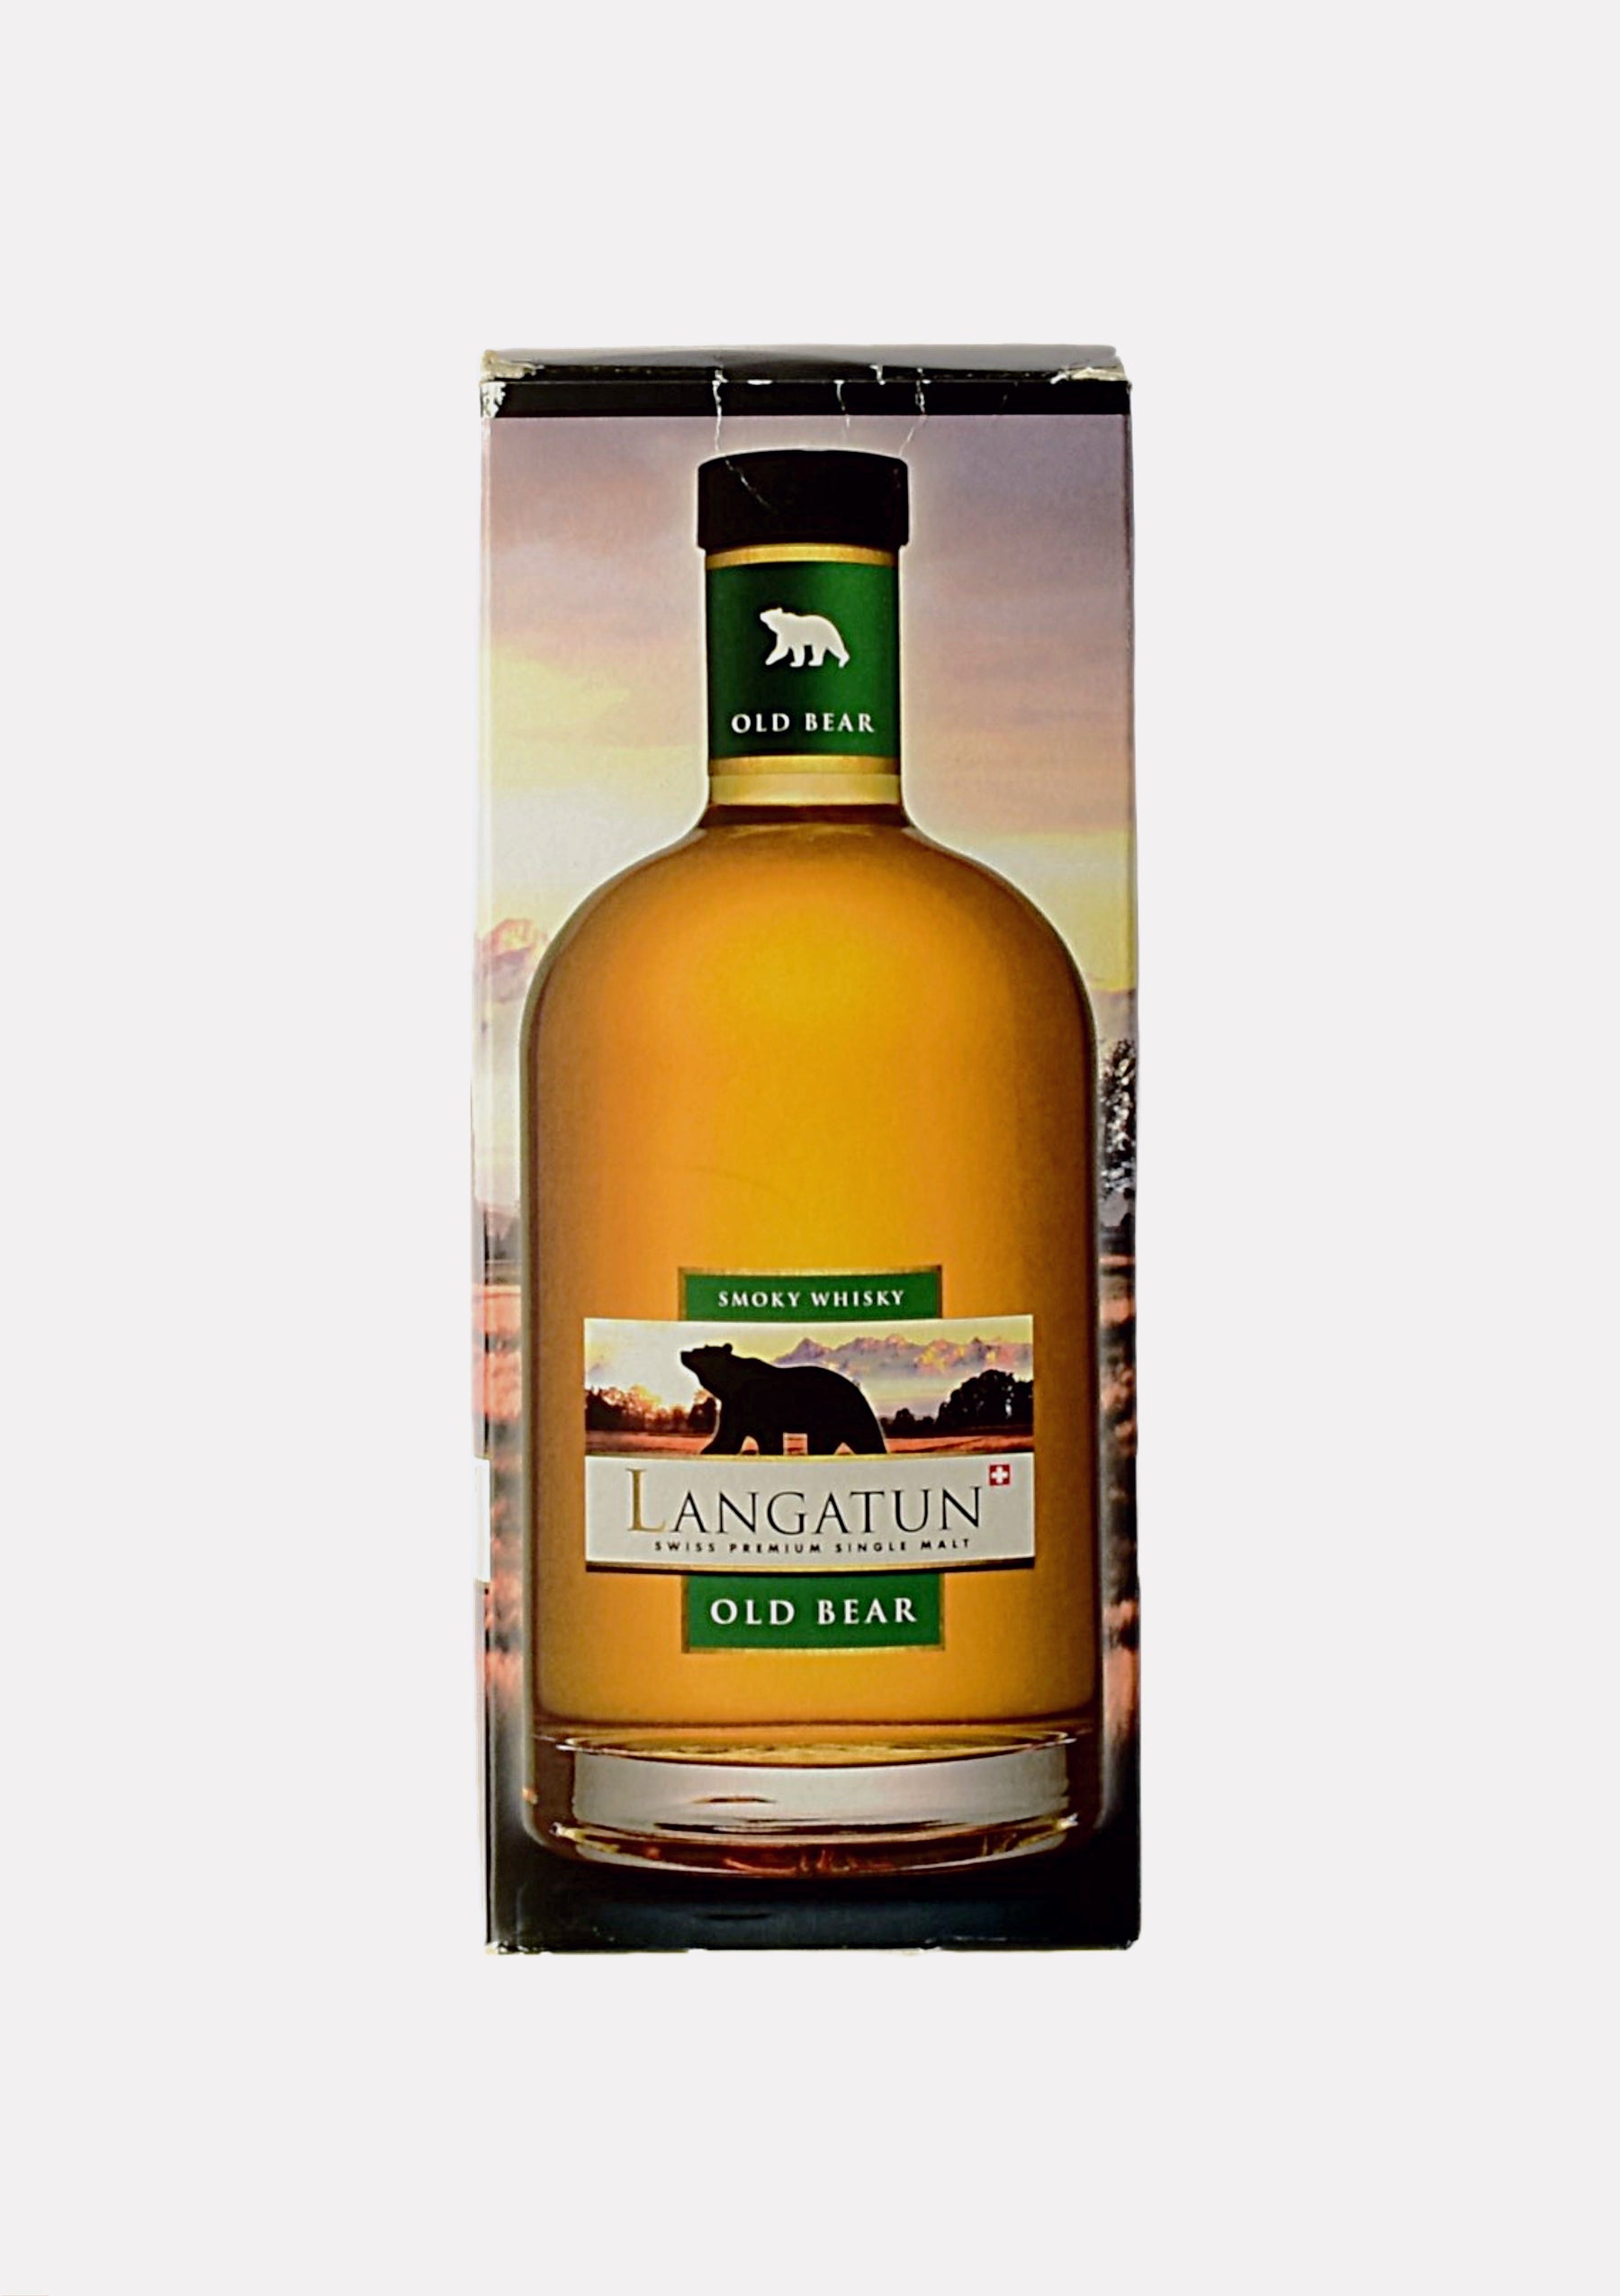 Langatun Smoky Whisky Old Bear 2008- 2011